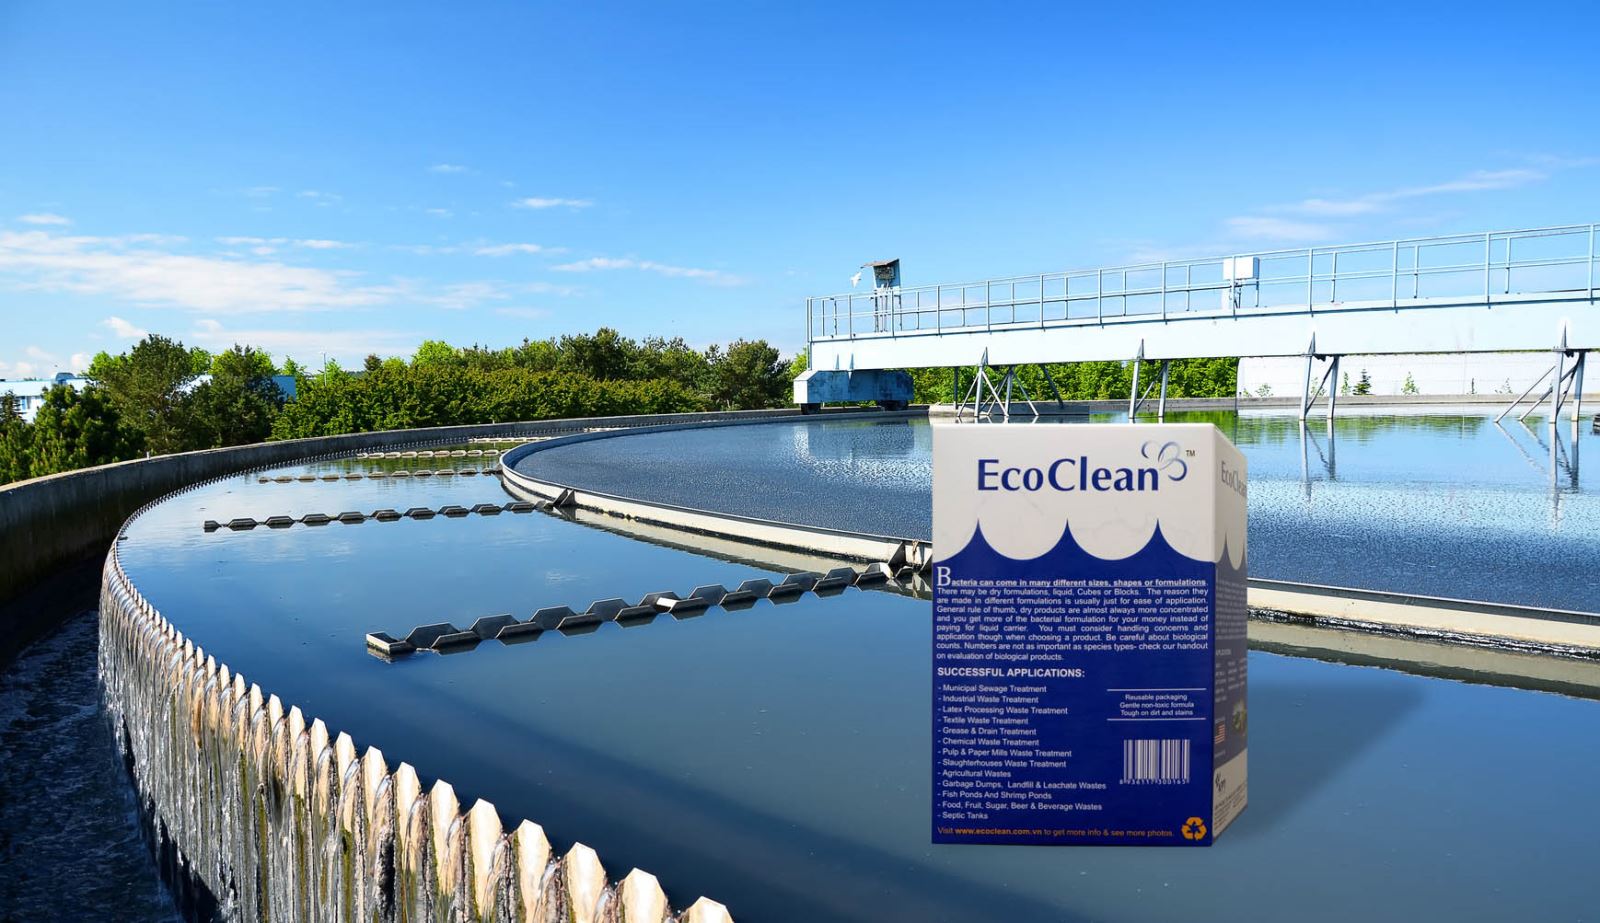 chế phẩm sinh học xử lý nước thải EcoClean